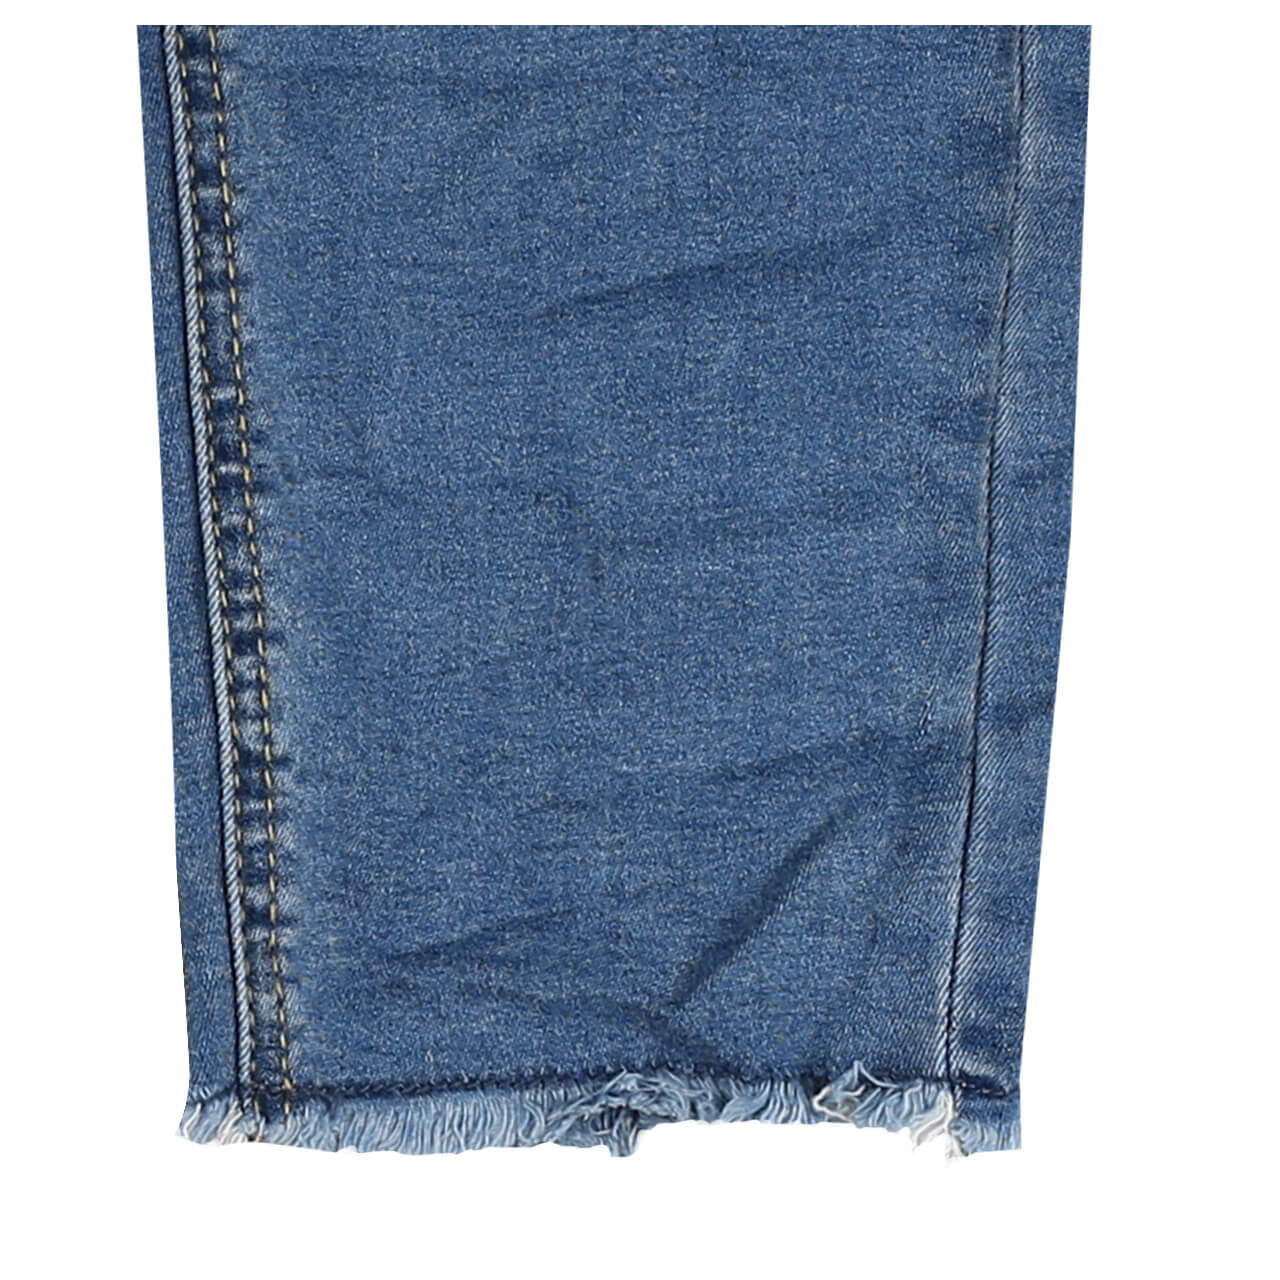 Buena Vista Jeans Malibu 7/8 Cozy Denim für Damen in Hellblau verwaschen, FarbNr.: 6162